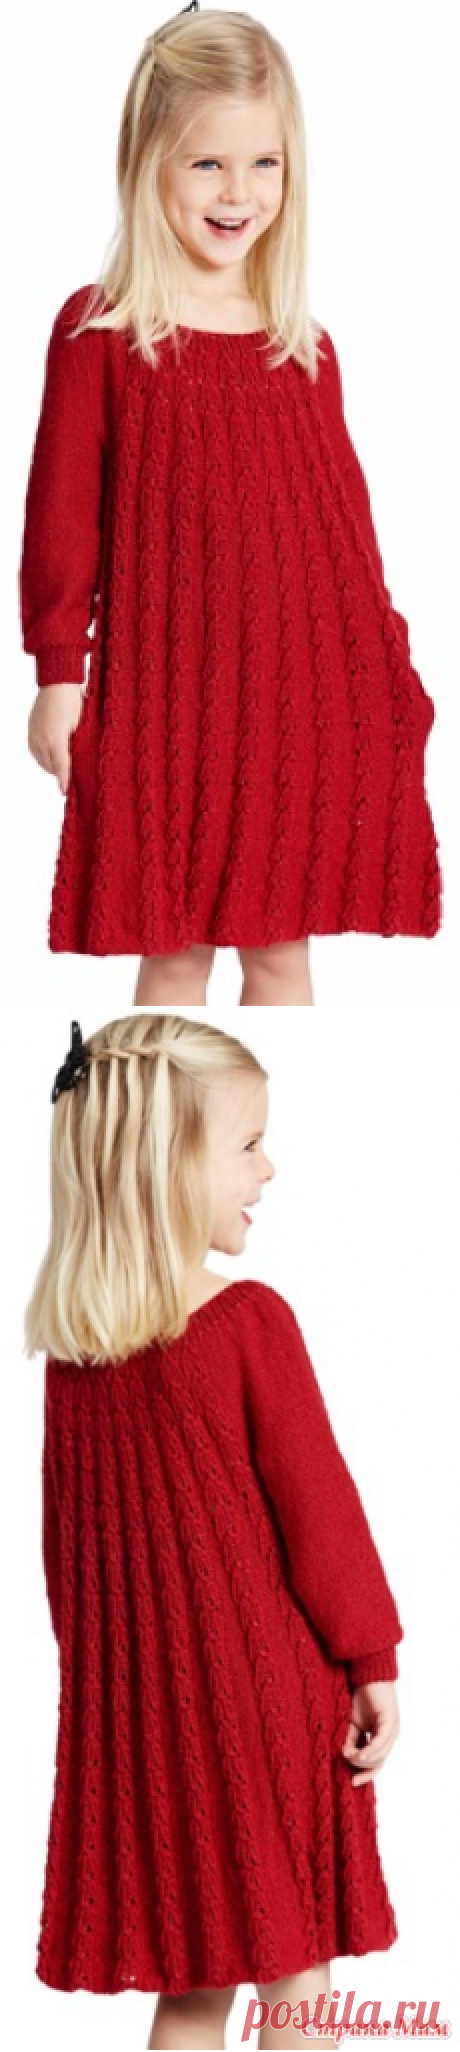 Платье для девочки спицами - Вязание - Страна Мам